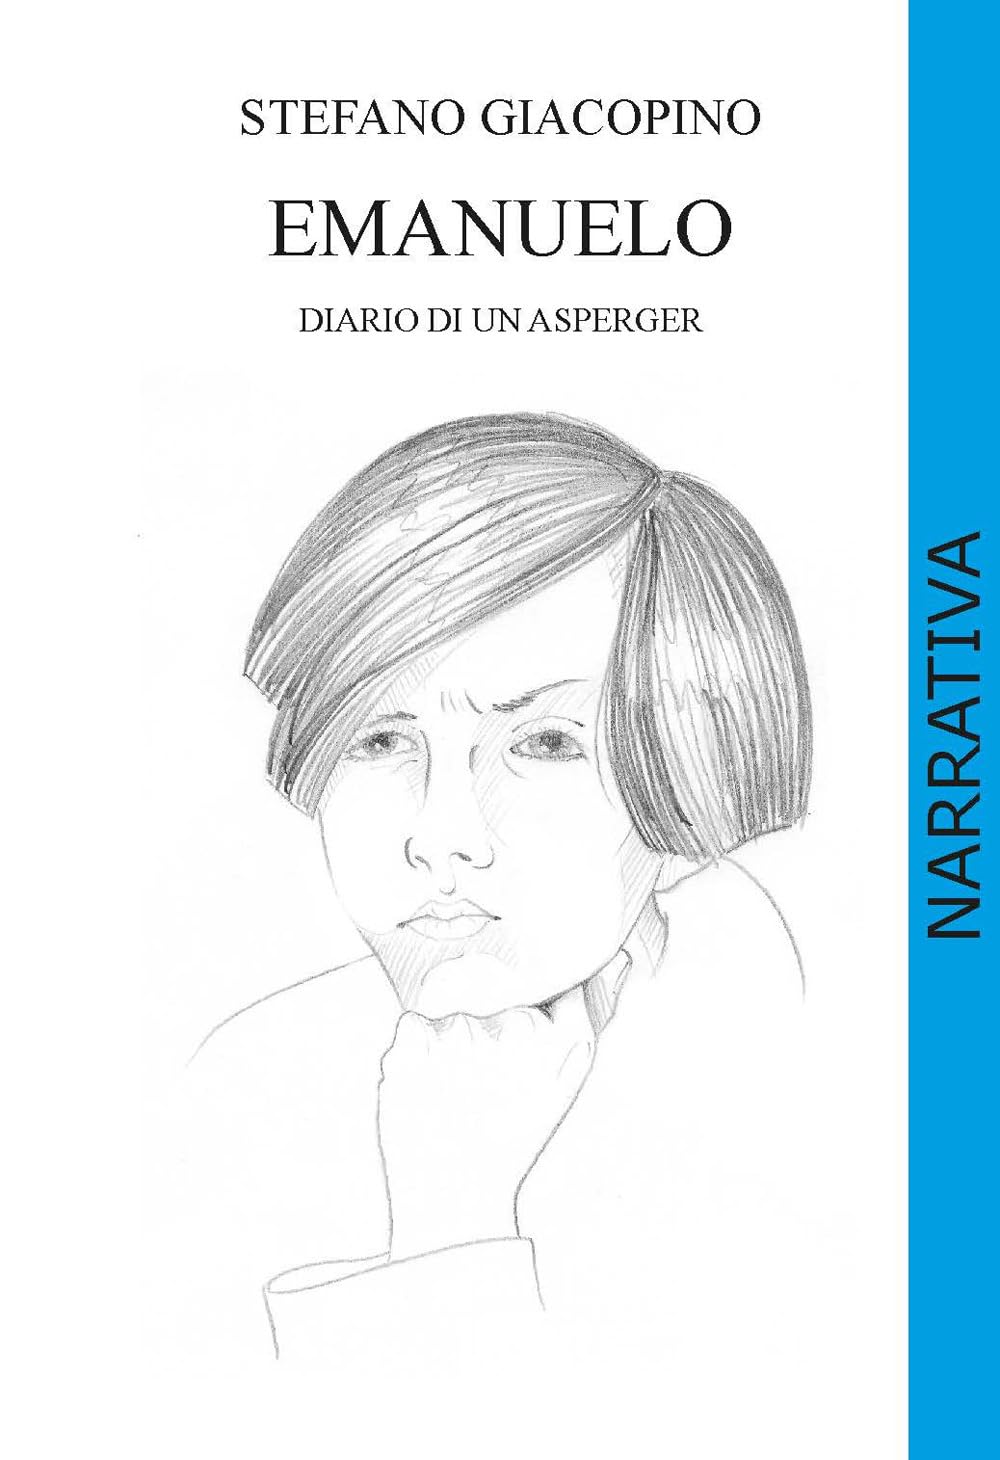 Stefano Giacopino presentato al Premio Campiello 2024 con il libro “Emanuelo. Diario di un asperger”